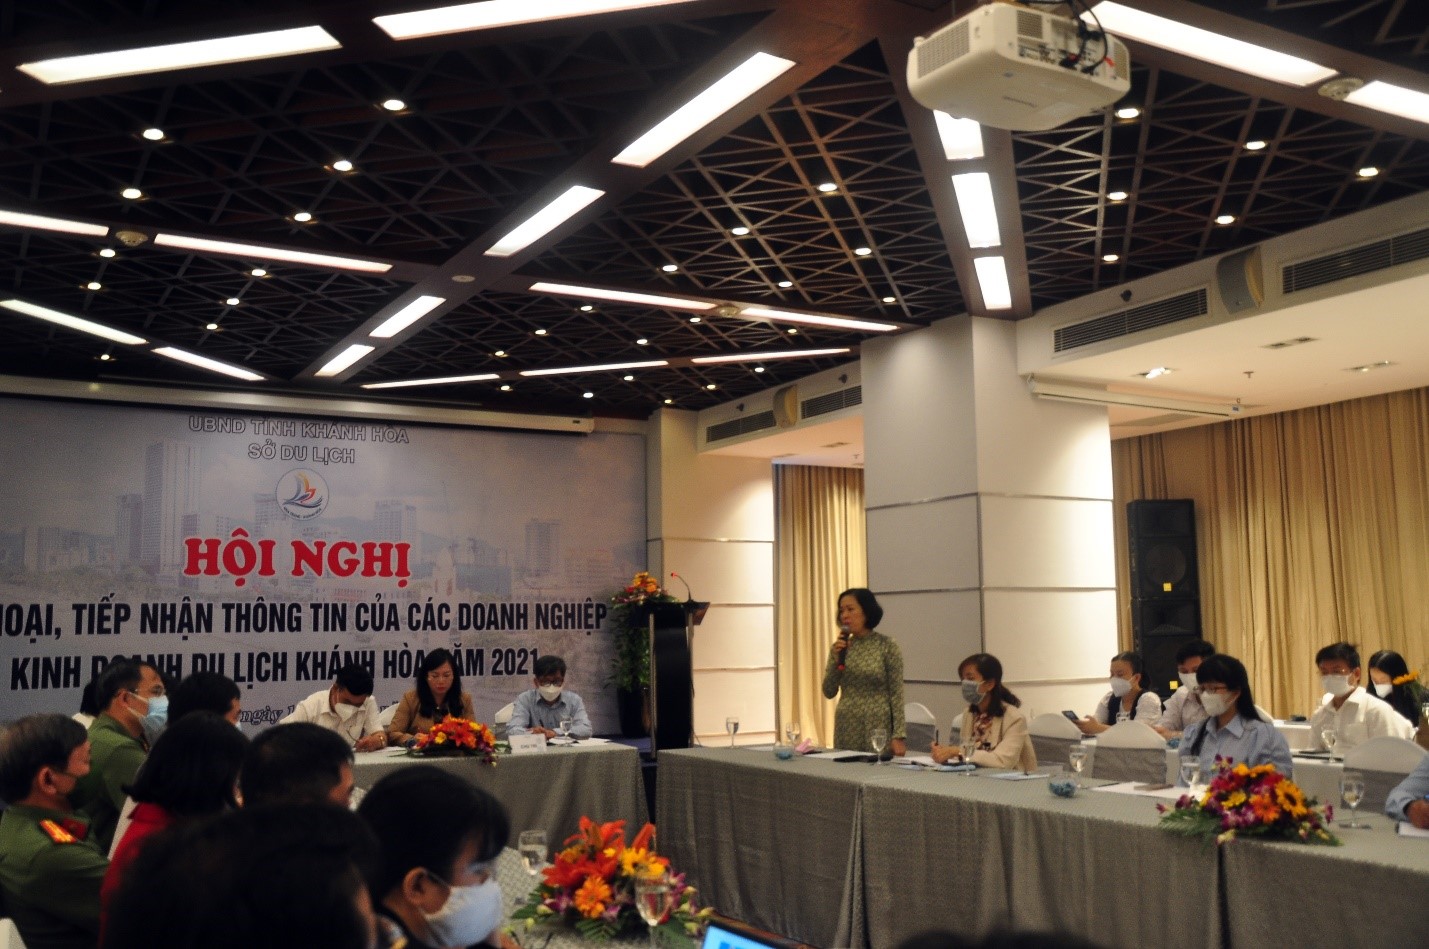 Bà Nguyễn Thị Hồng Minh - Tổng Giám Đốc CTY Cổ Phần Bay Quốc Tế Cam Ranh phát biểu về những khó khăn thuận lợi trong đón khách quốc nội và quốc tế.